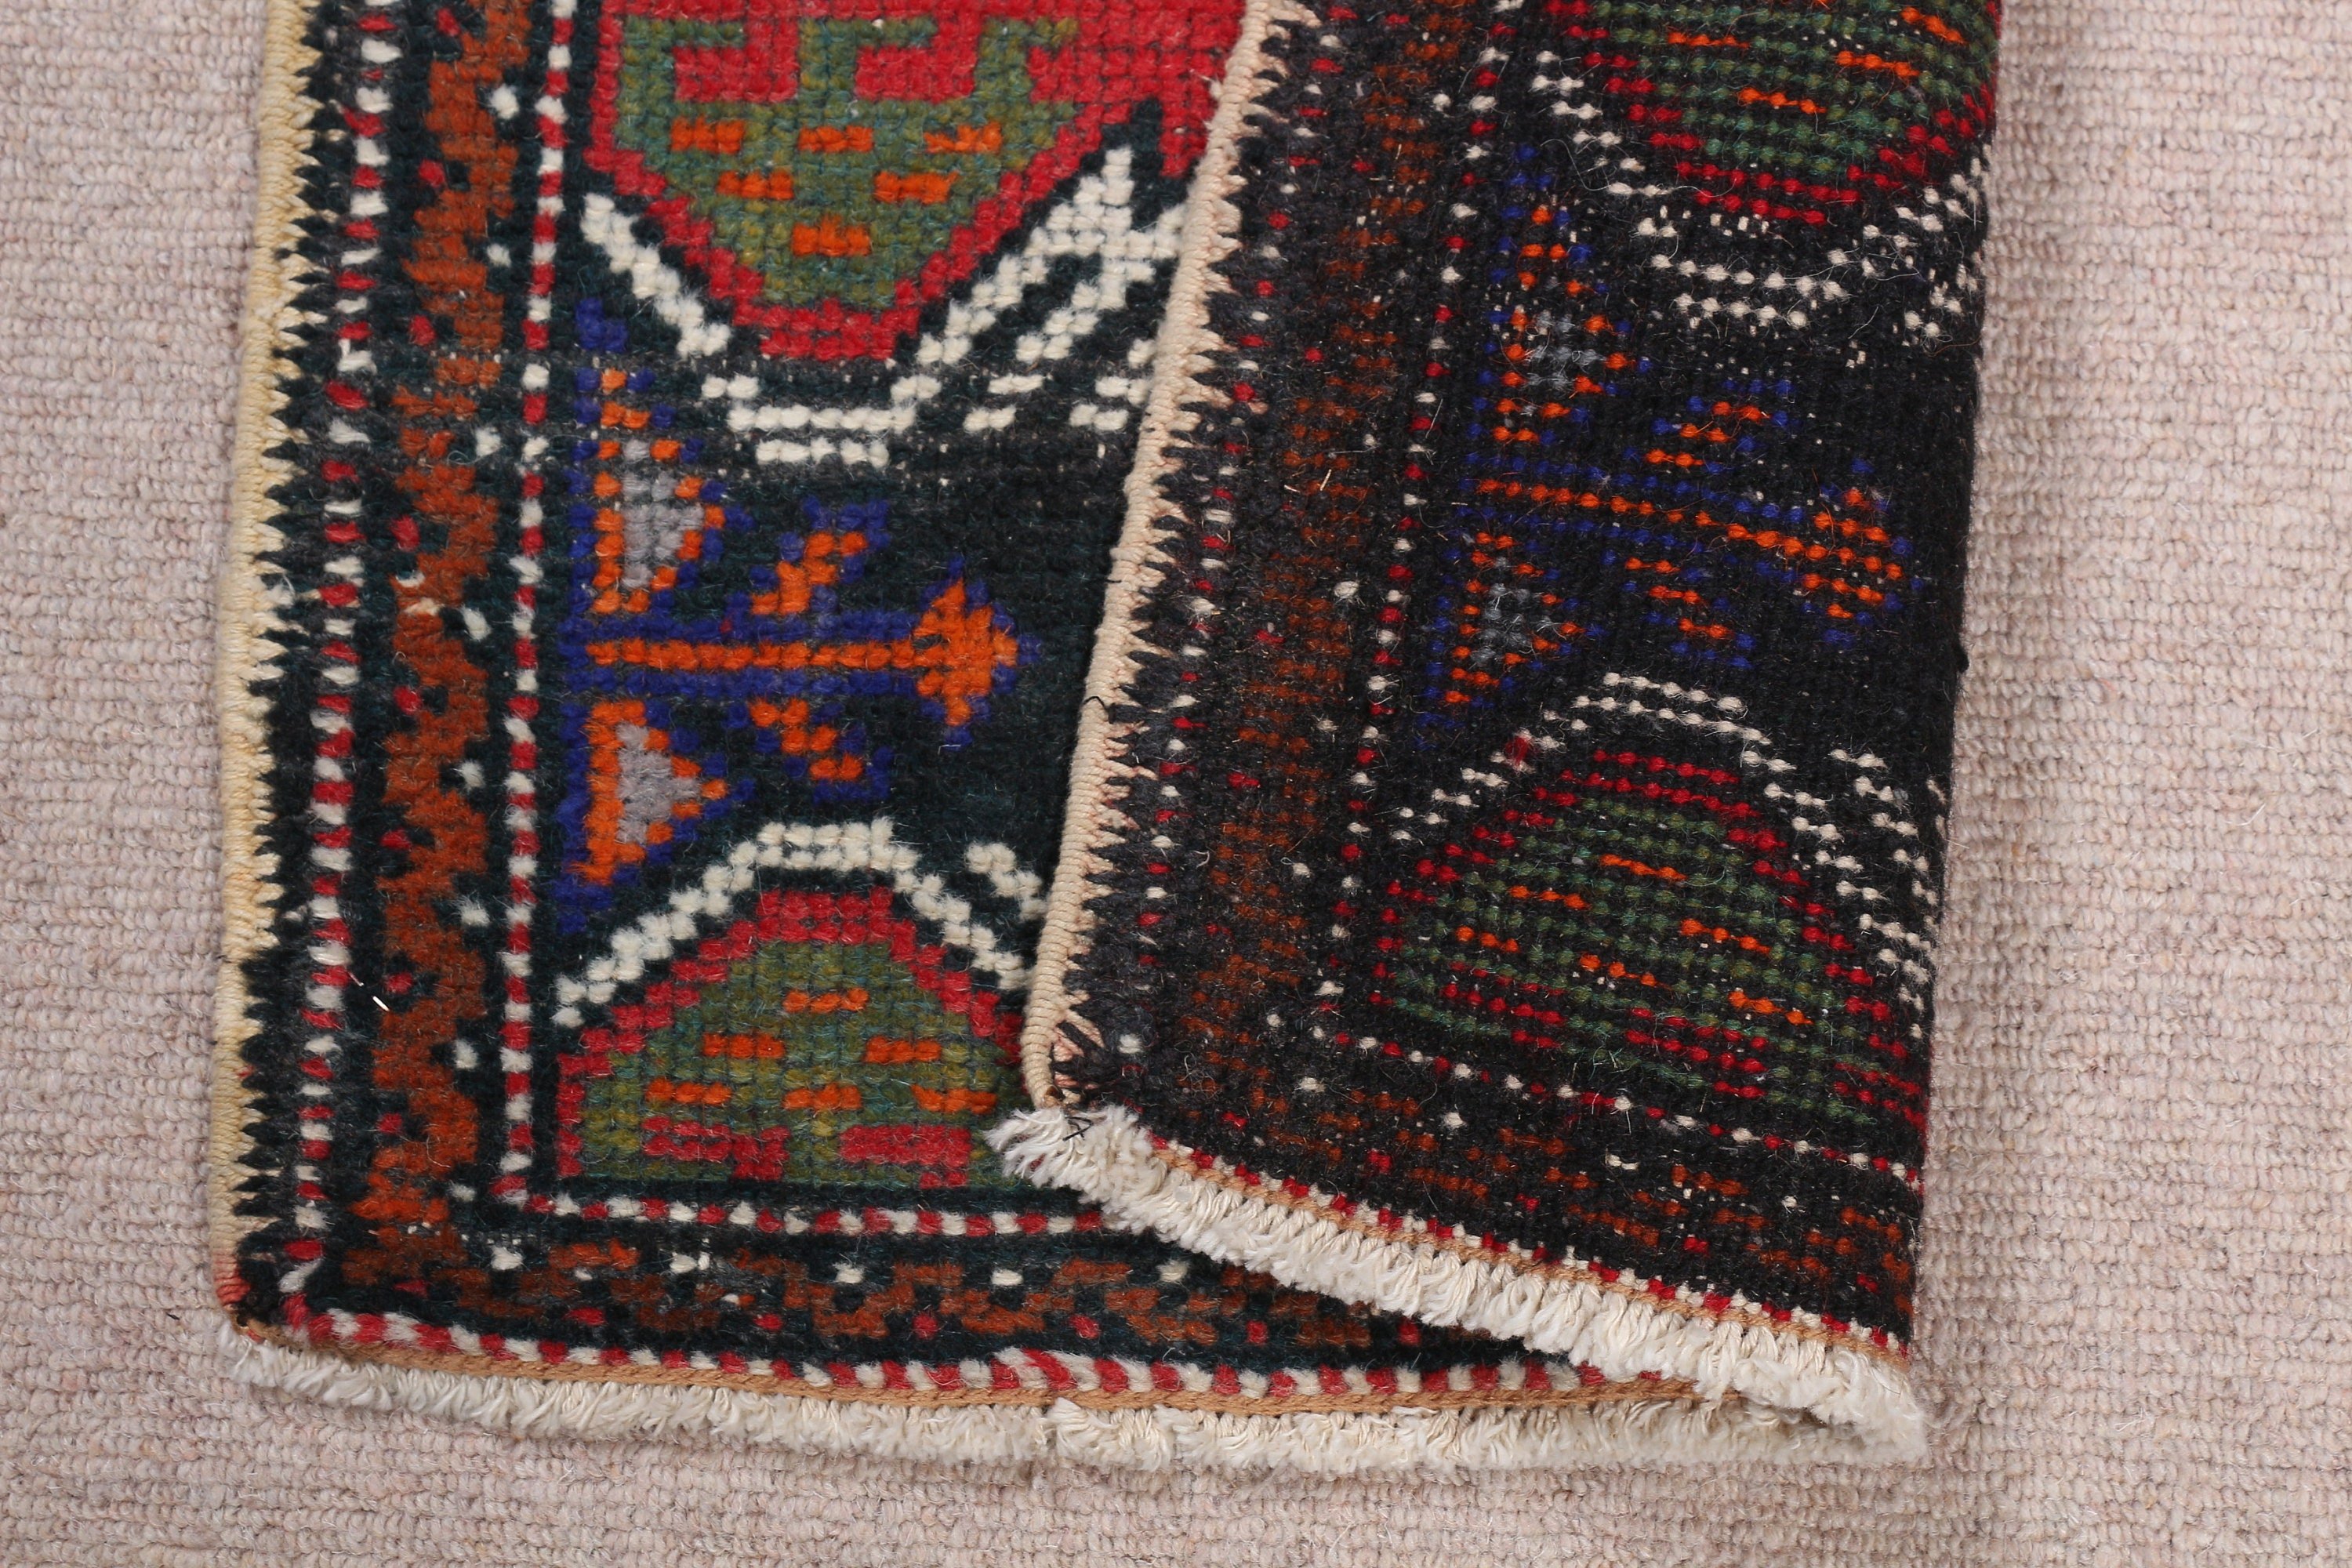 Turkish Rug, 1.7x3.1 ft Small Rugs, Red Wool Rug, Cute Rugs, Vintage Rug, Floor Rug, Moroccan Rug, Bedroom Rug, Rugs for Bathroom, Bath Rug